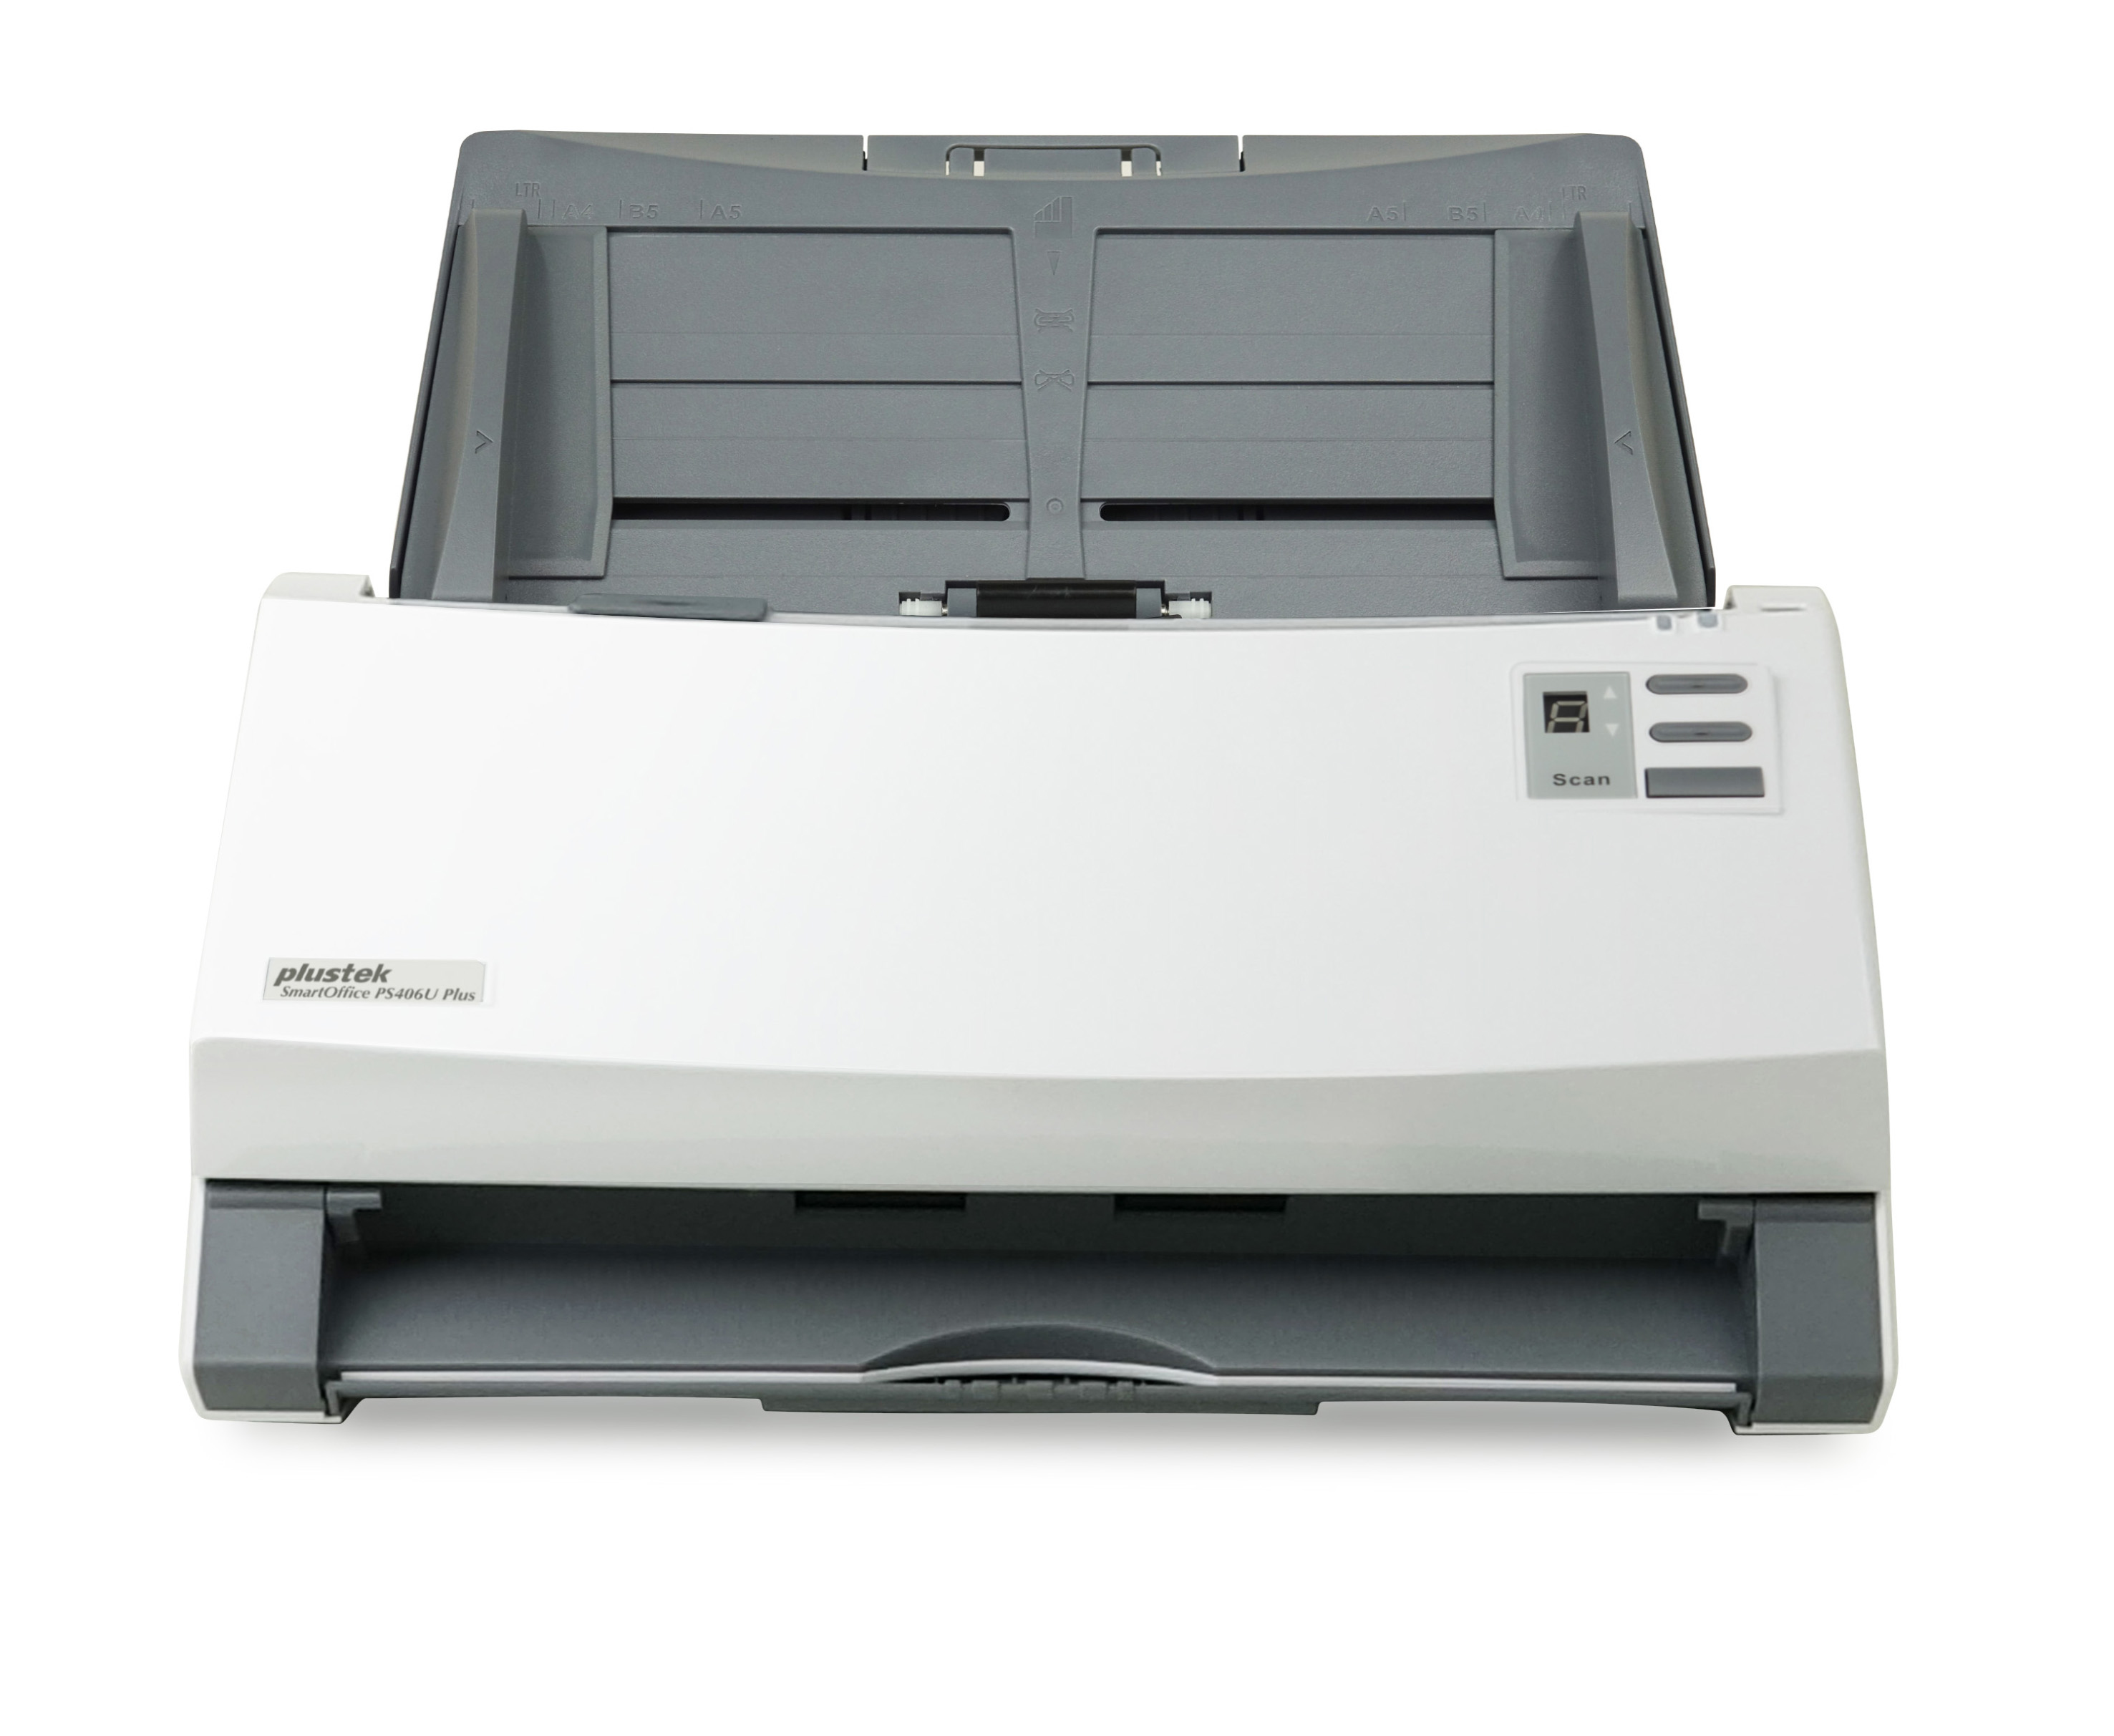 PS406U 600 x Plus bis SmartOffice zu , Dual-CIS PLUSTEK 600 Dokumentenscanner dpi,